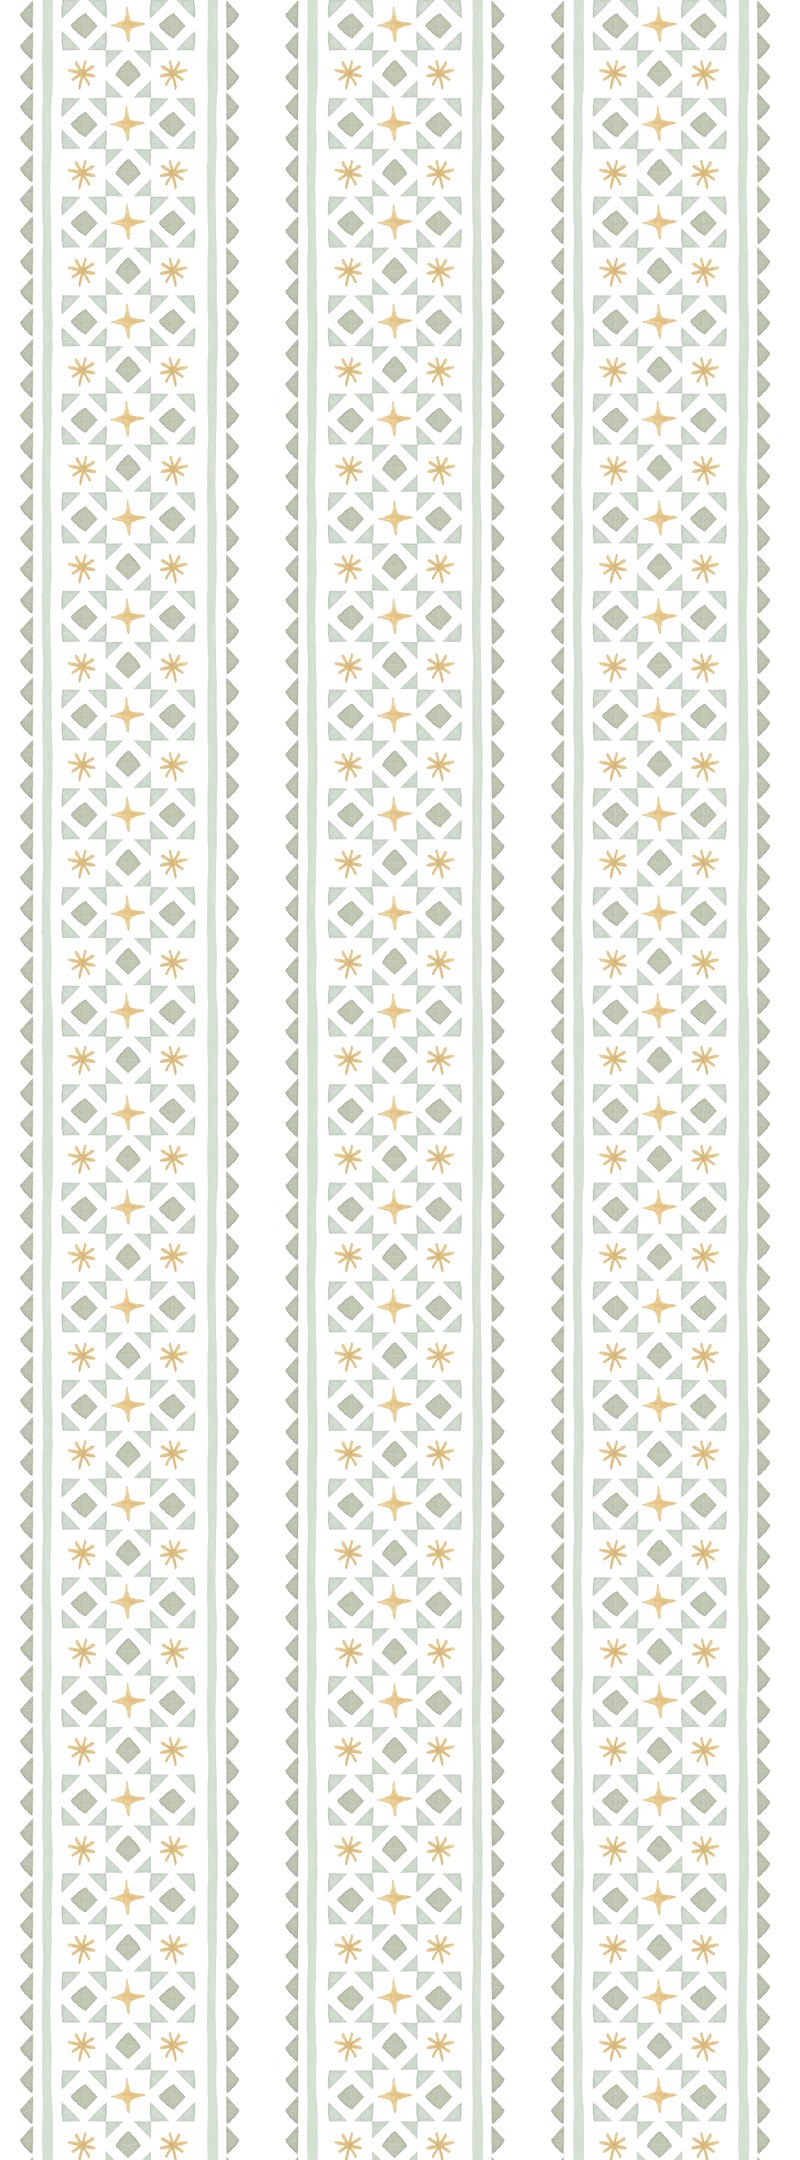 Papel de parede gravataria e asteriscos (verde e amarelo) T.Design - 100% celulose